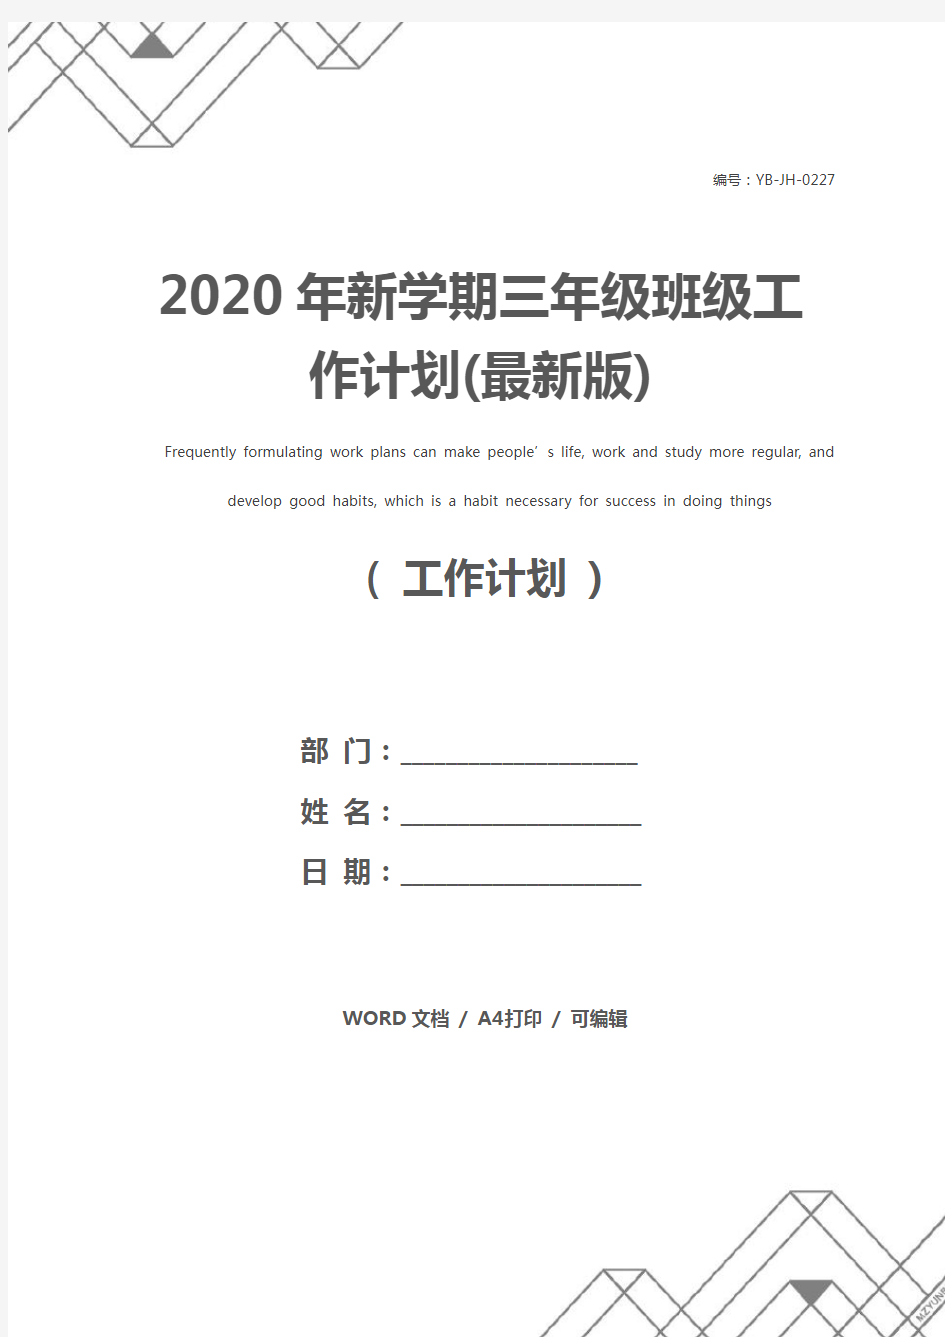 2020年新学期三年级班级工作计划(最新版)